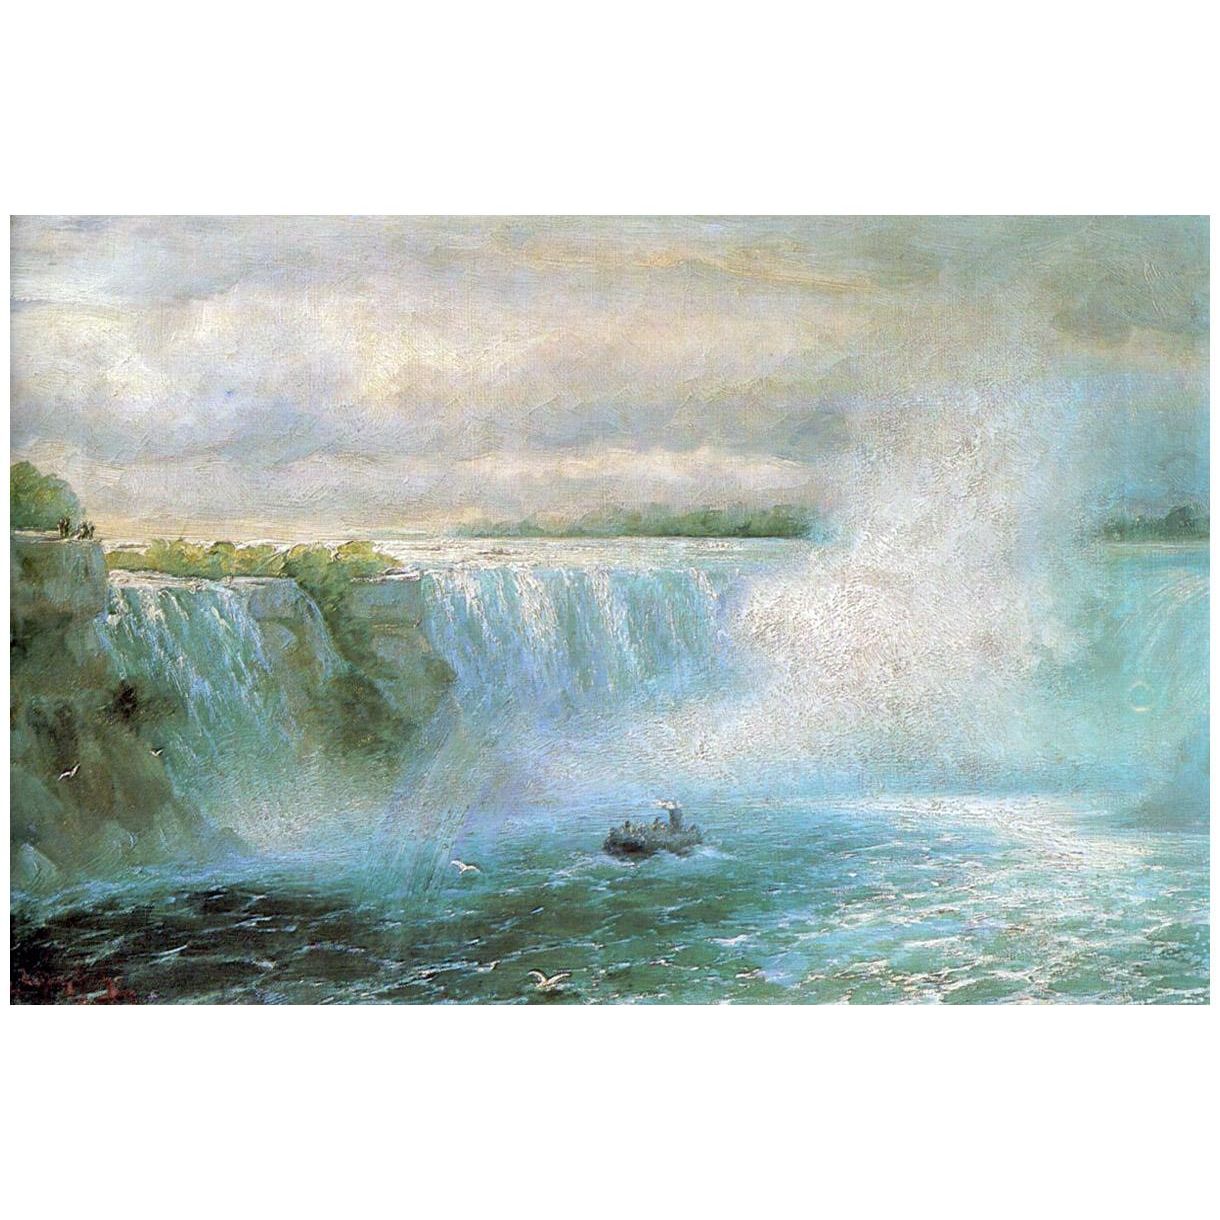 Иван Айвазовский. Ниагарский водопад. 1894. Национальная галерея, Ереван